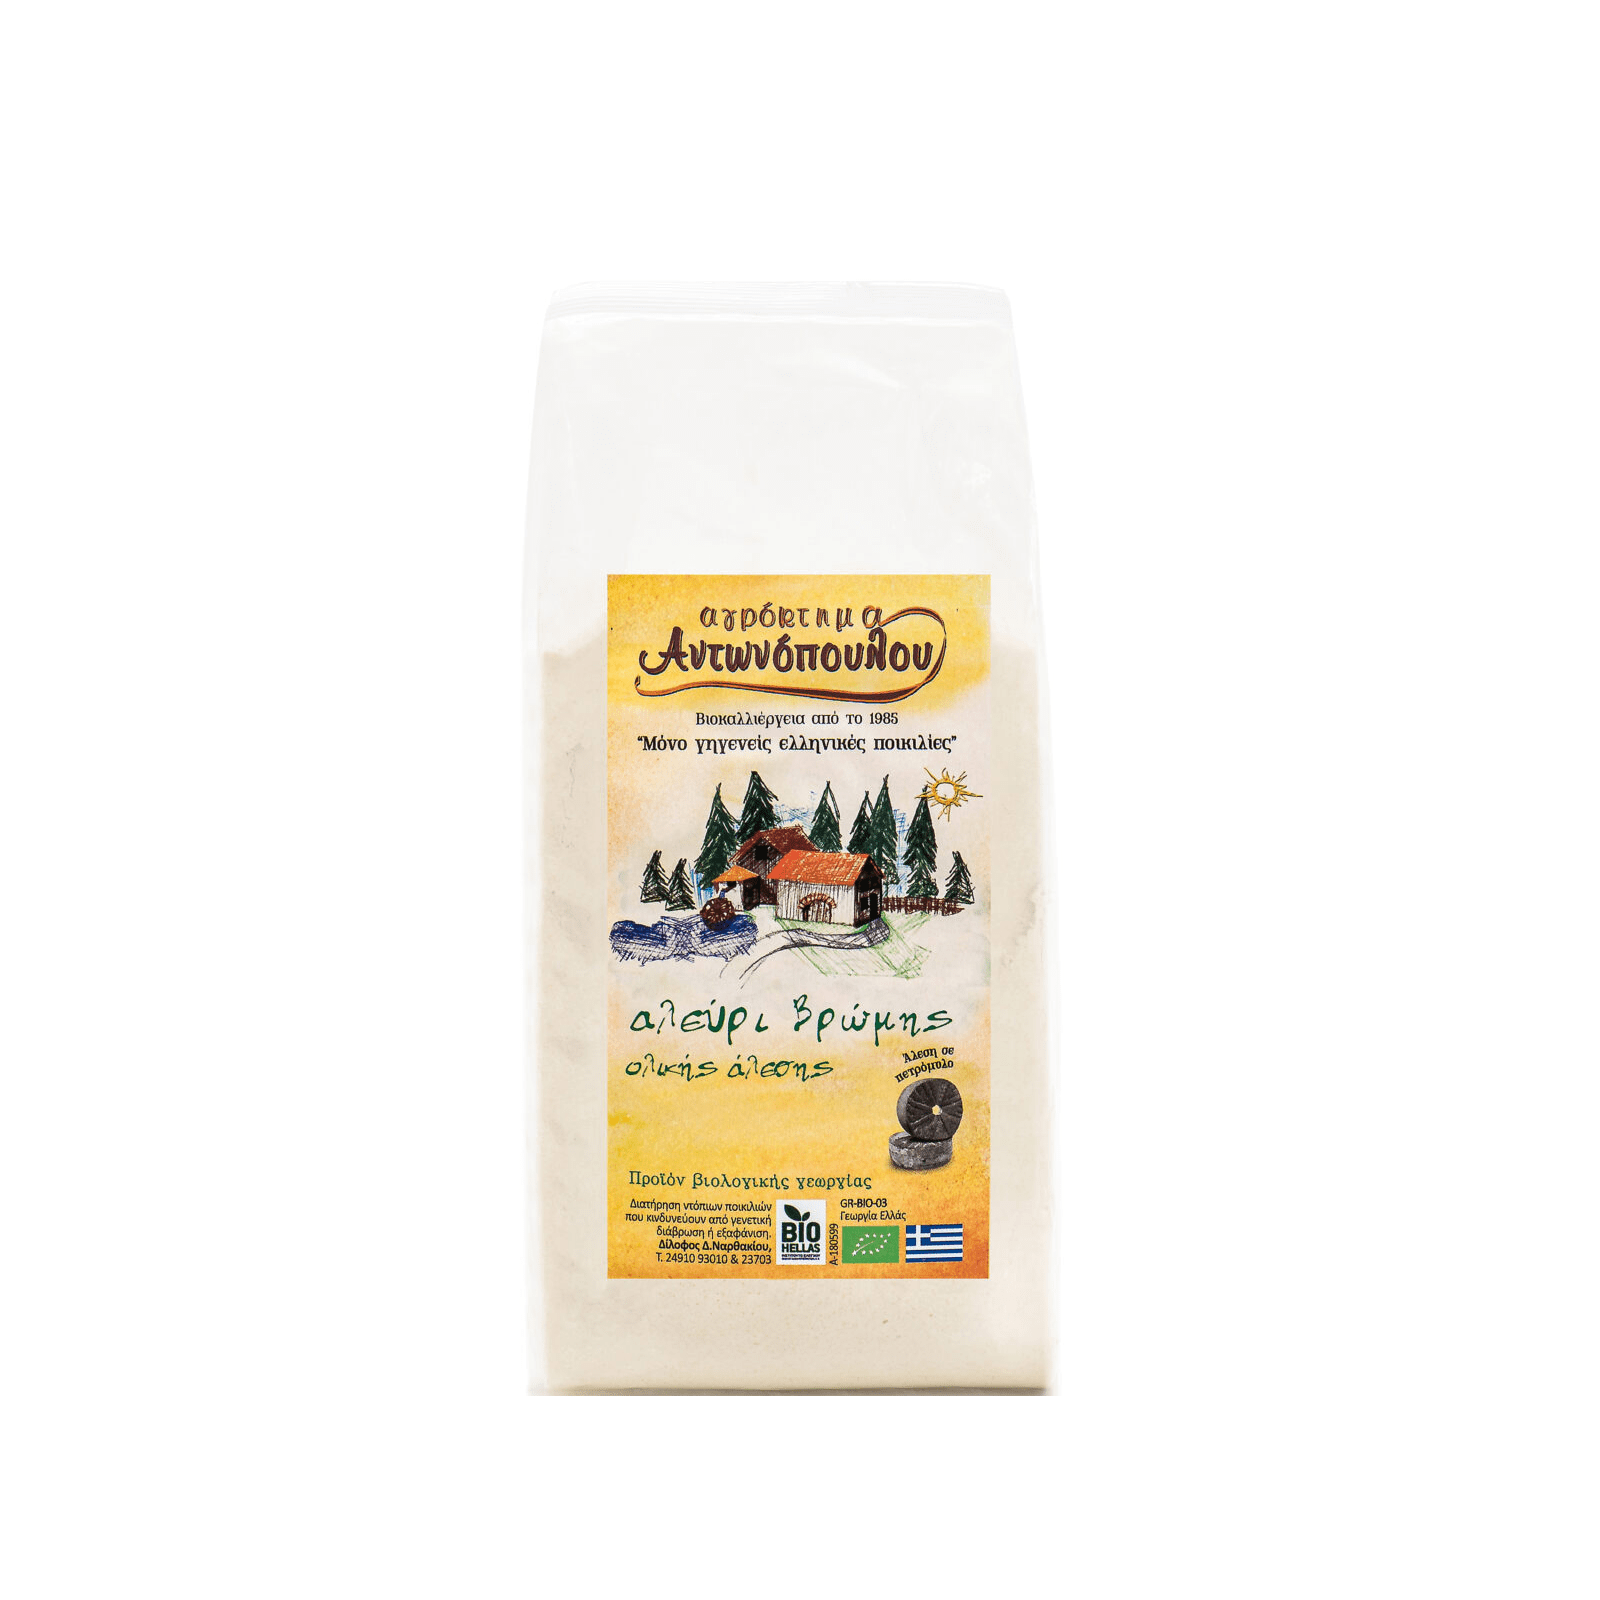 Wholegrain oat flour